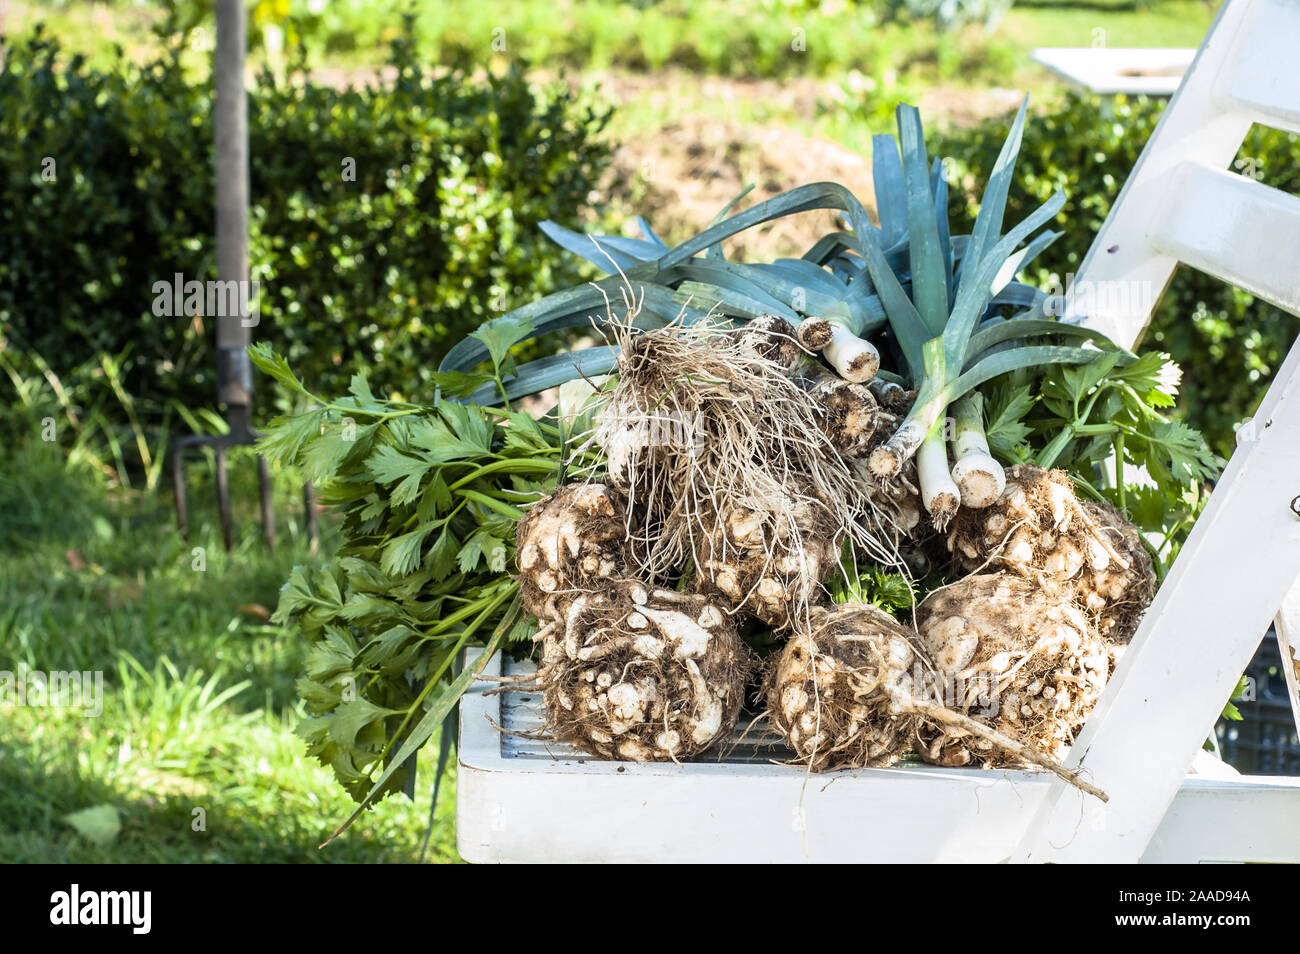 Frischen Sellerie und Porree, organisches Gemüse - frisch geerntete Erzeugnisse in den Garten, lokale Landwirtschaft Konzept Stockfoto